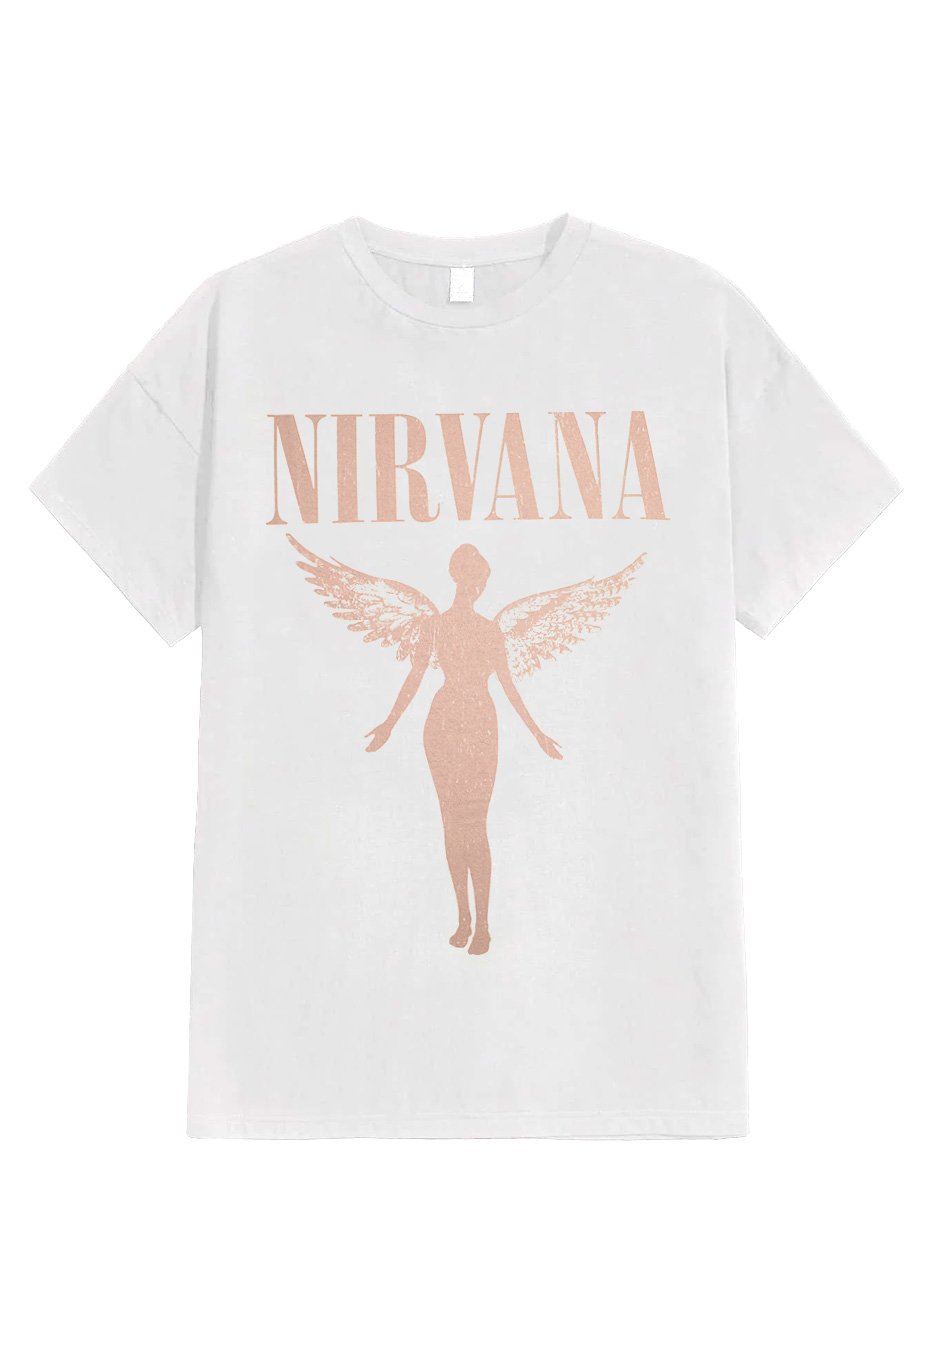 Nirvana - In Utero Tour White - T-Shirt